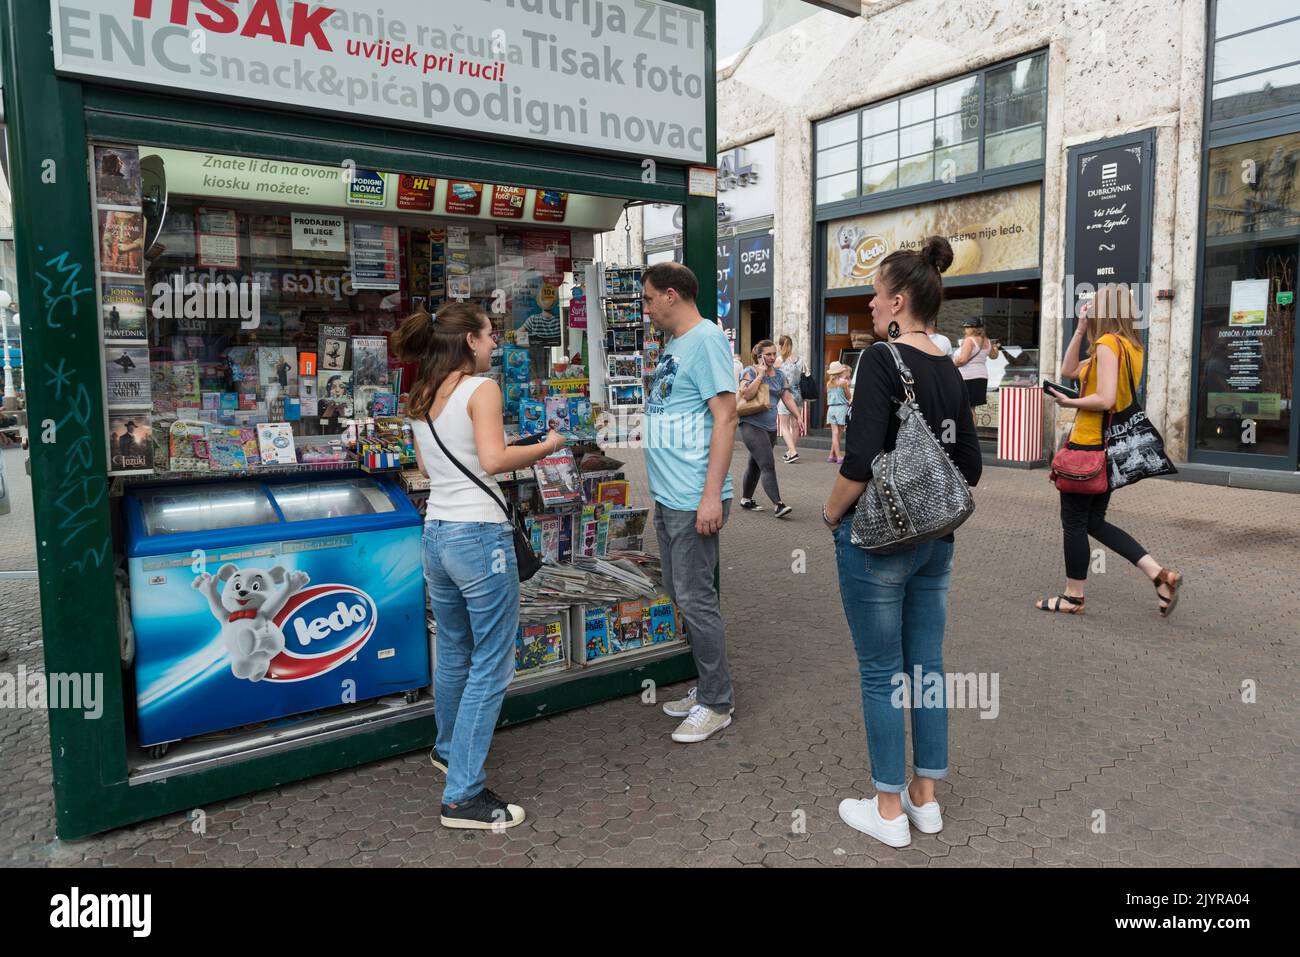 Un kiosco Tisak que vende artículos como gafas de sol, paraguas, cigarrillos, encendedores, revistas, baterías y mucho más. Zagreb, Croacia, Europa Foto de stock